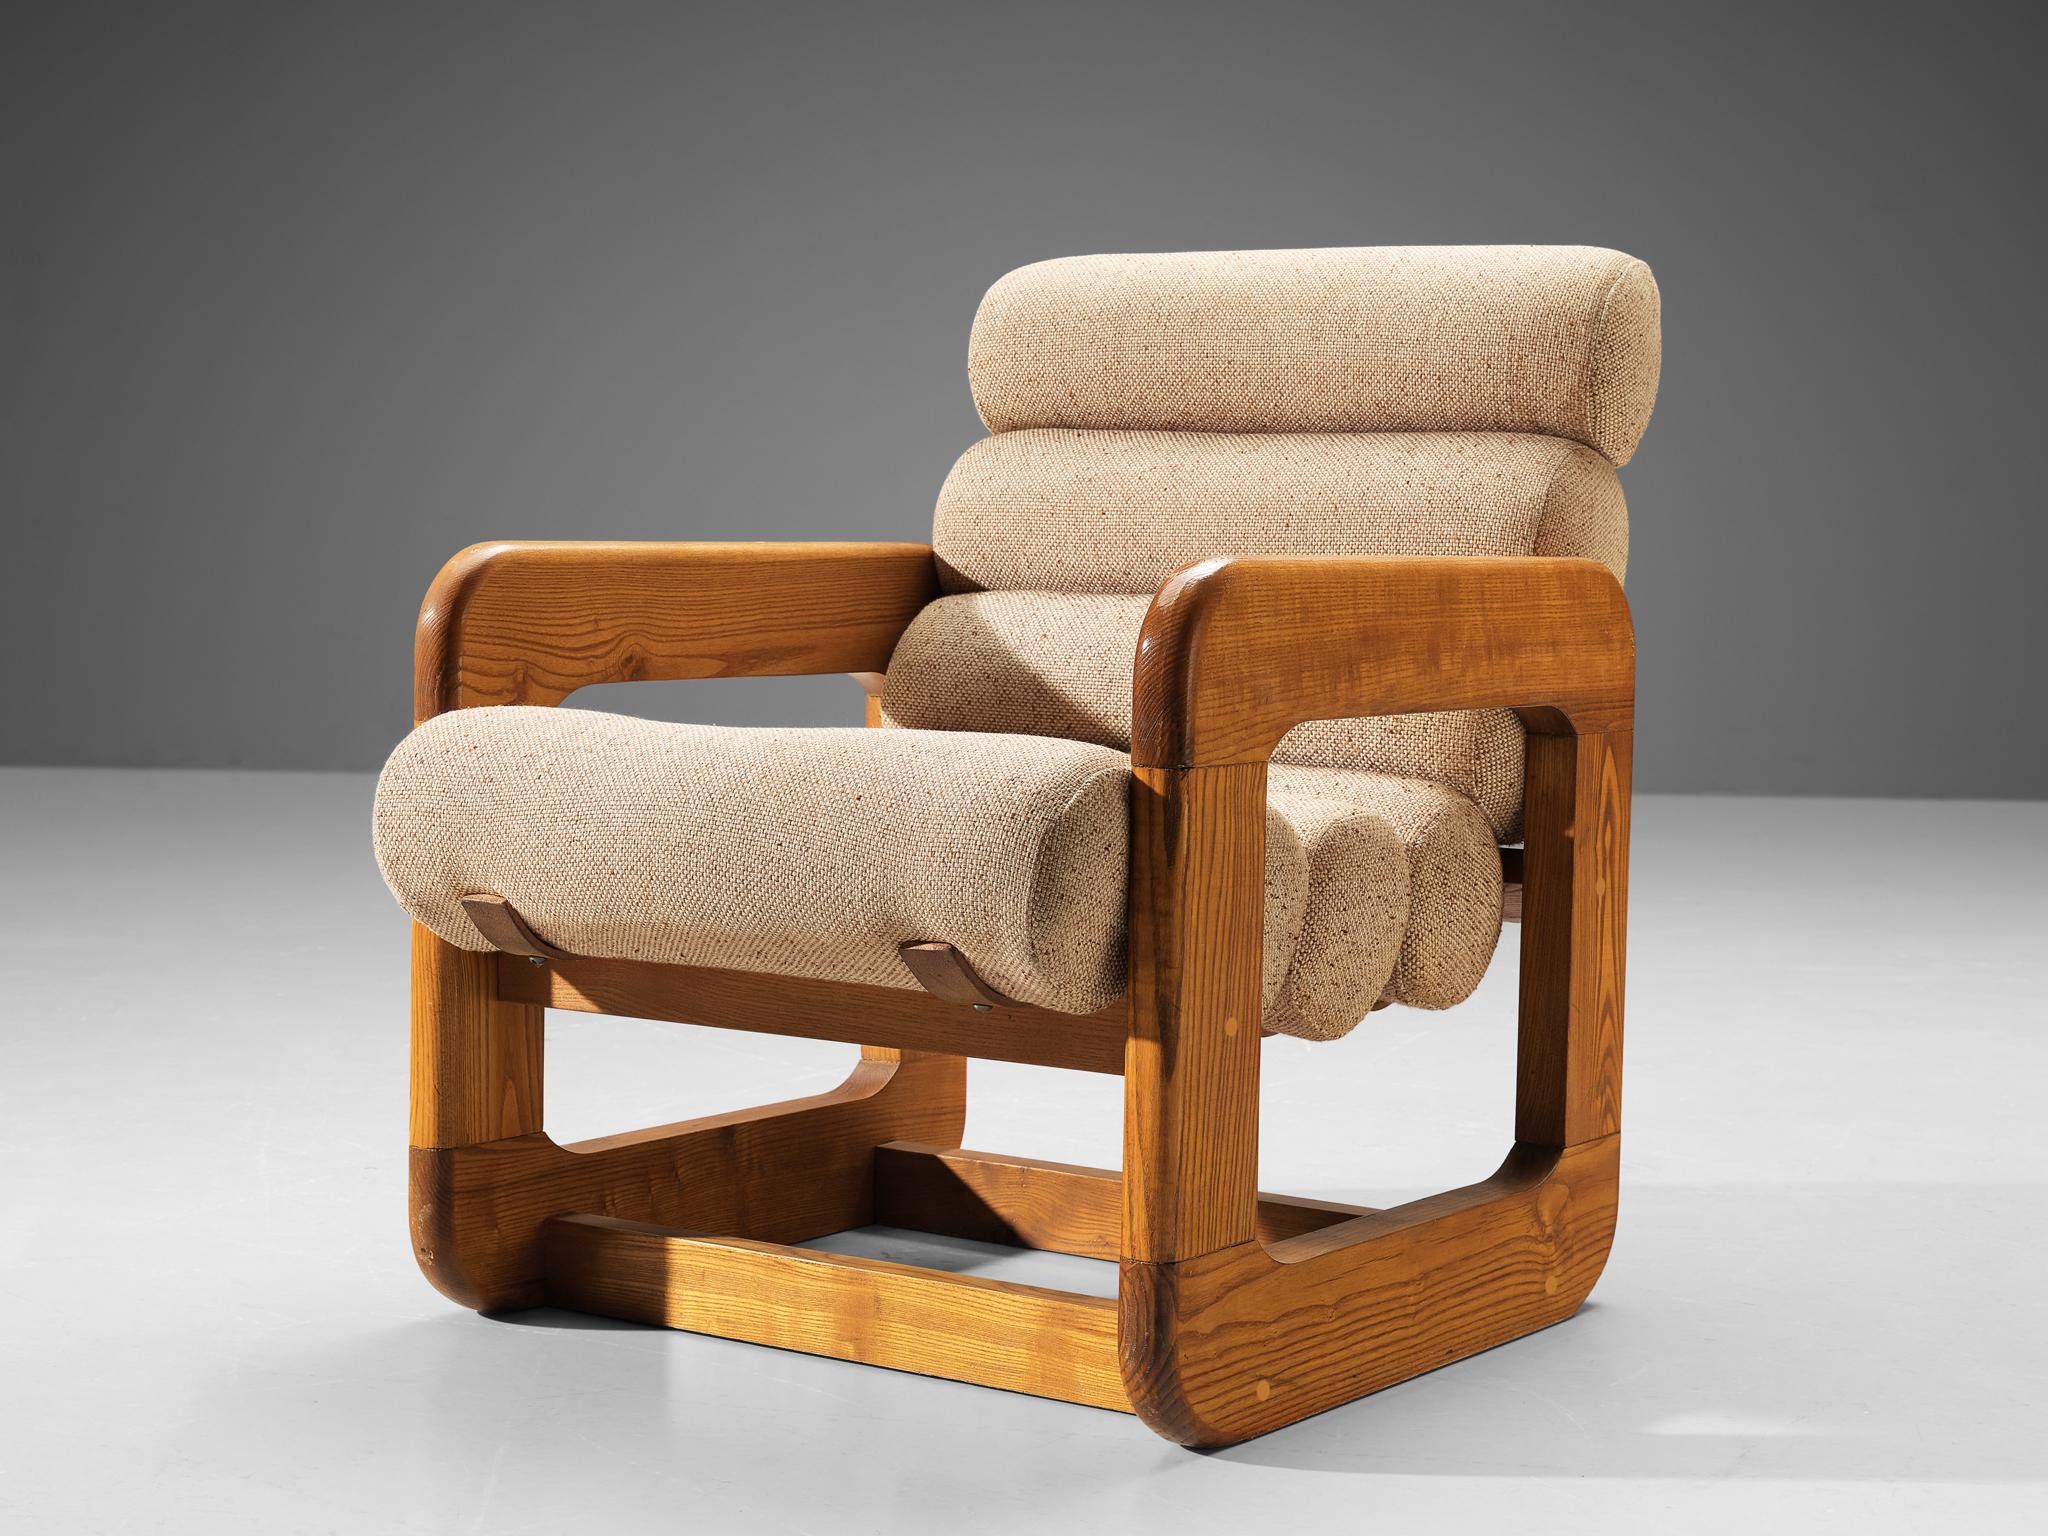 Chaise longue, frêne, tissu, métal, Europe, années 1970. 

Chaise longue non conventionnelle dotée d'un design exceptionnel. L'assise contient plusieurs coussins en forme de tube attachés ensemble pour créer un siège et un dossier. La répétition de